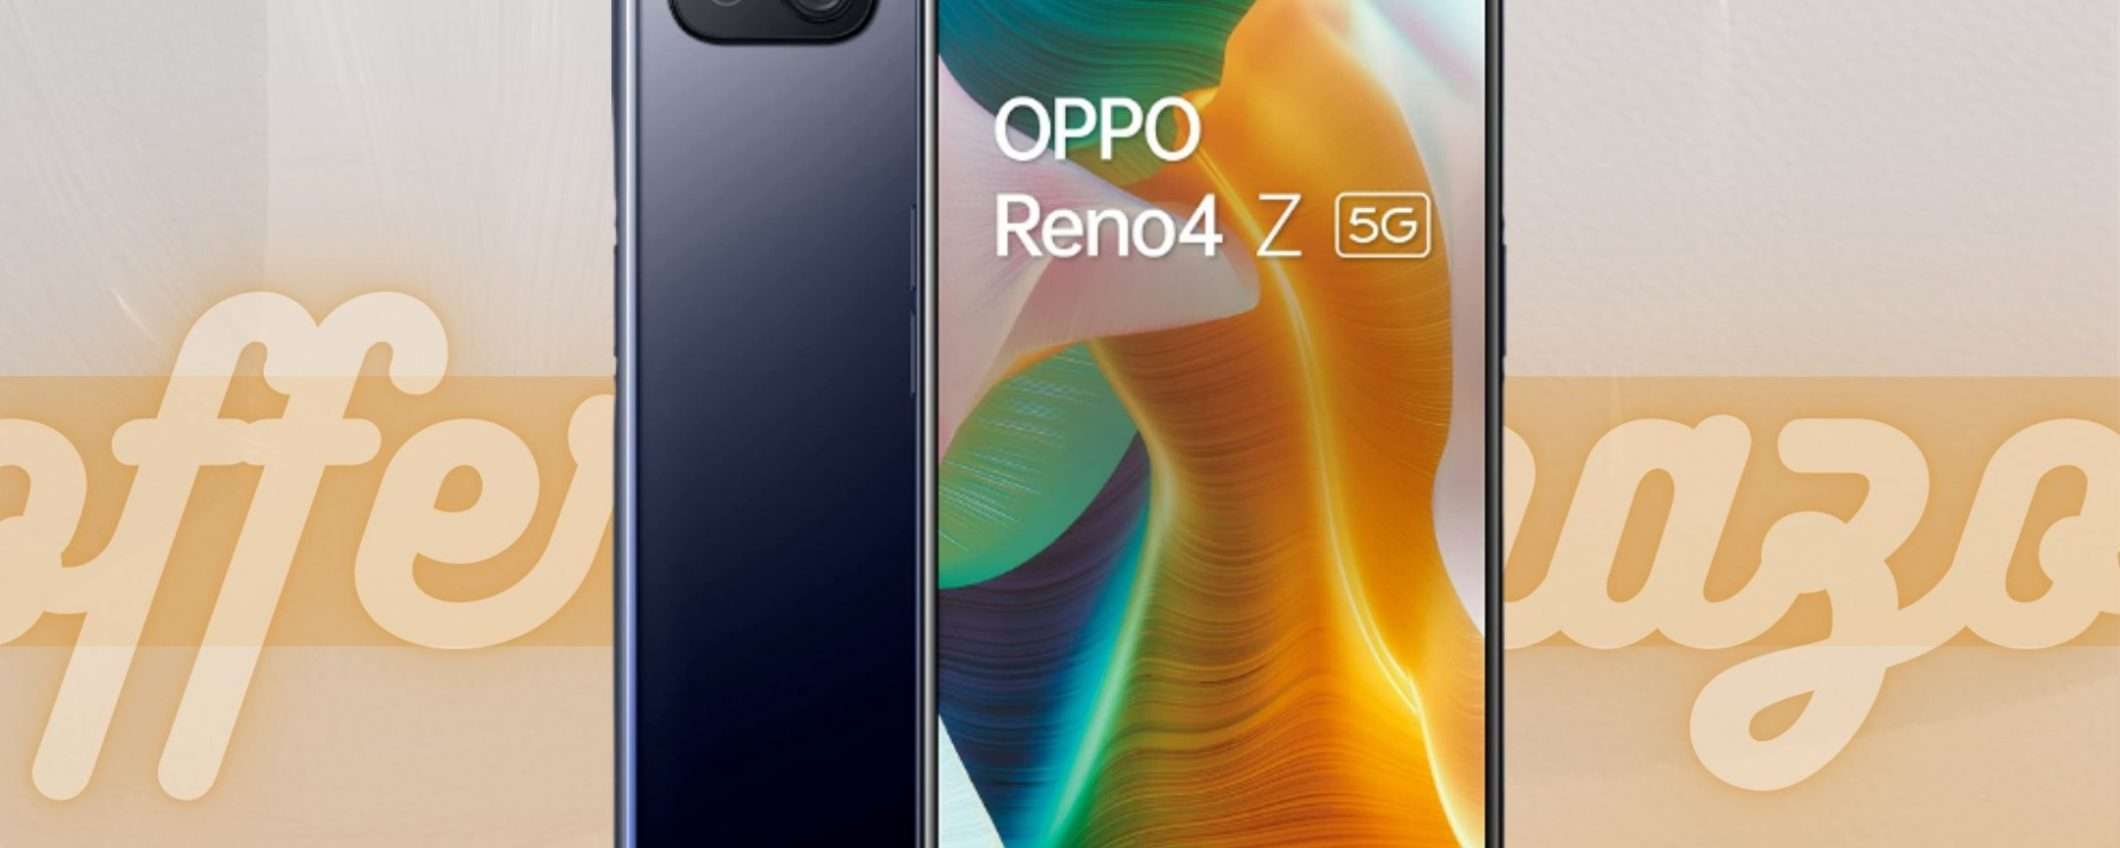 OPPO Reno4 Z 5G in super offerta: più di 170 euro di sconto